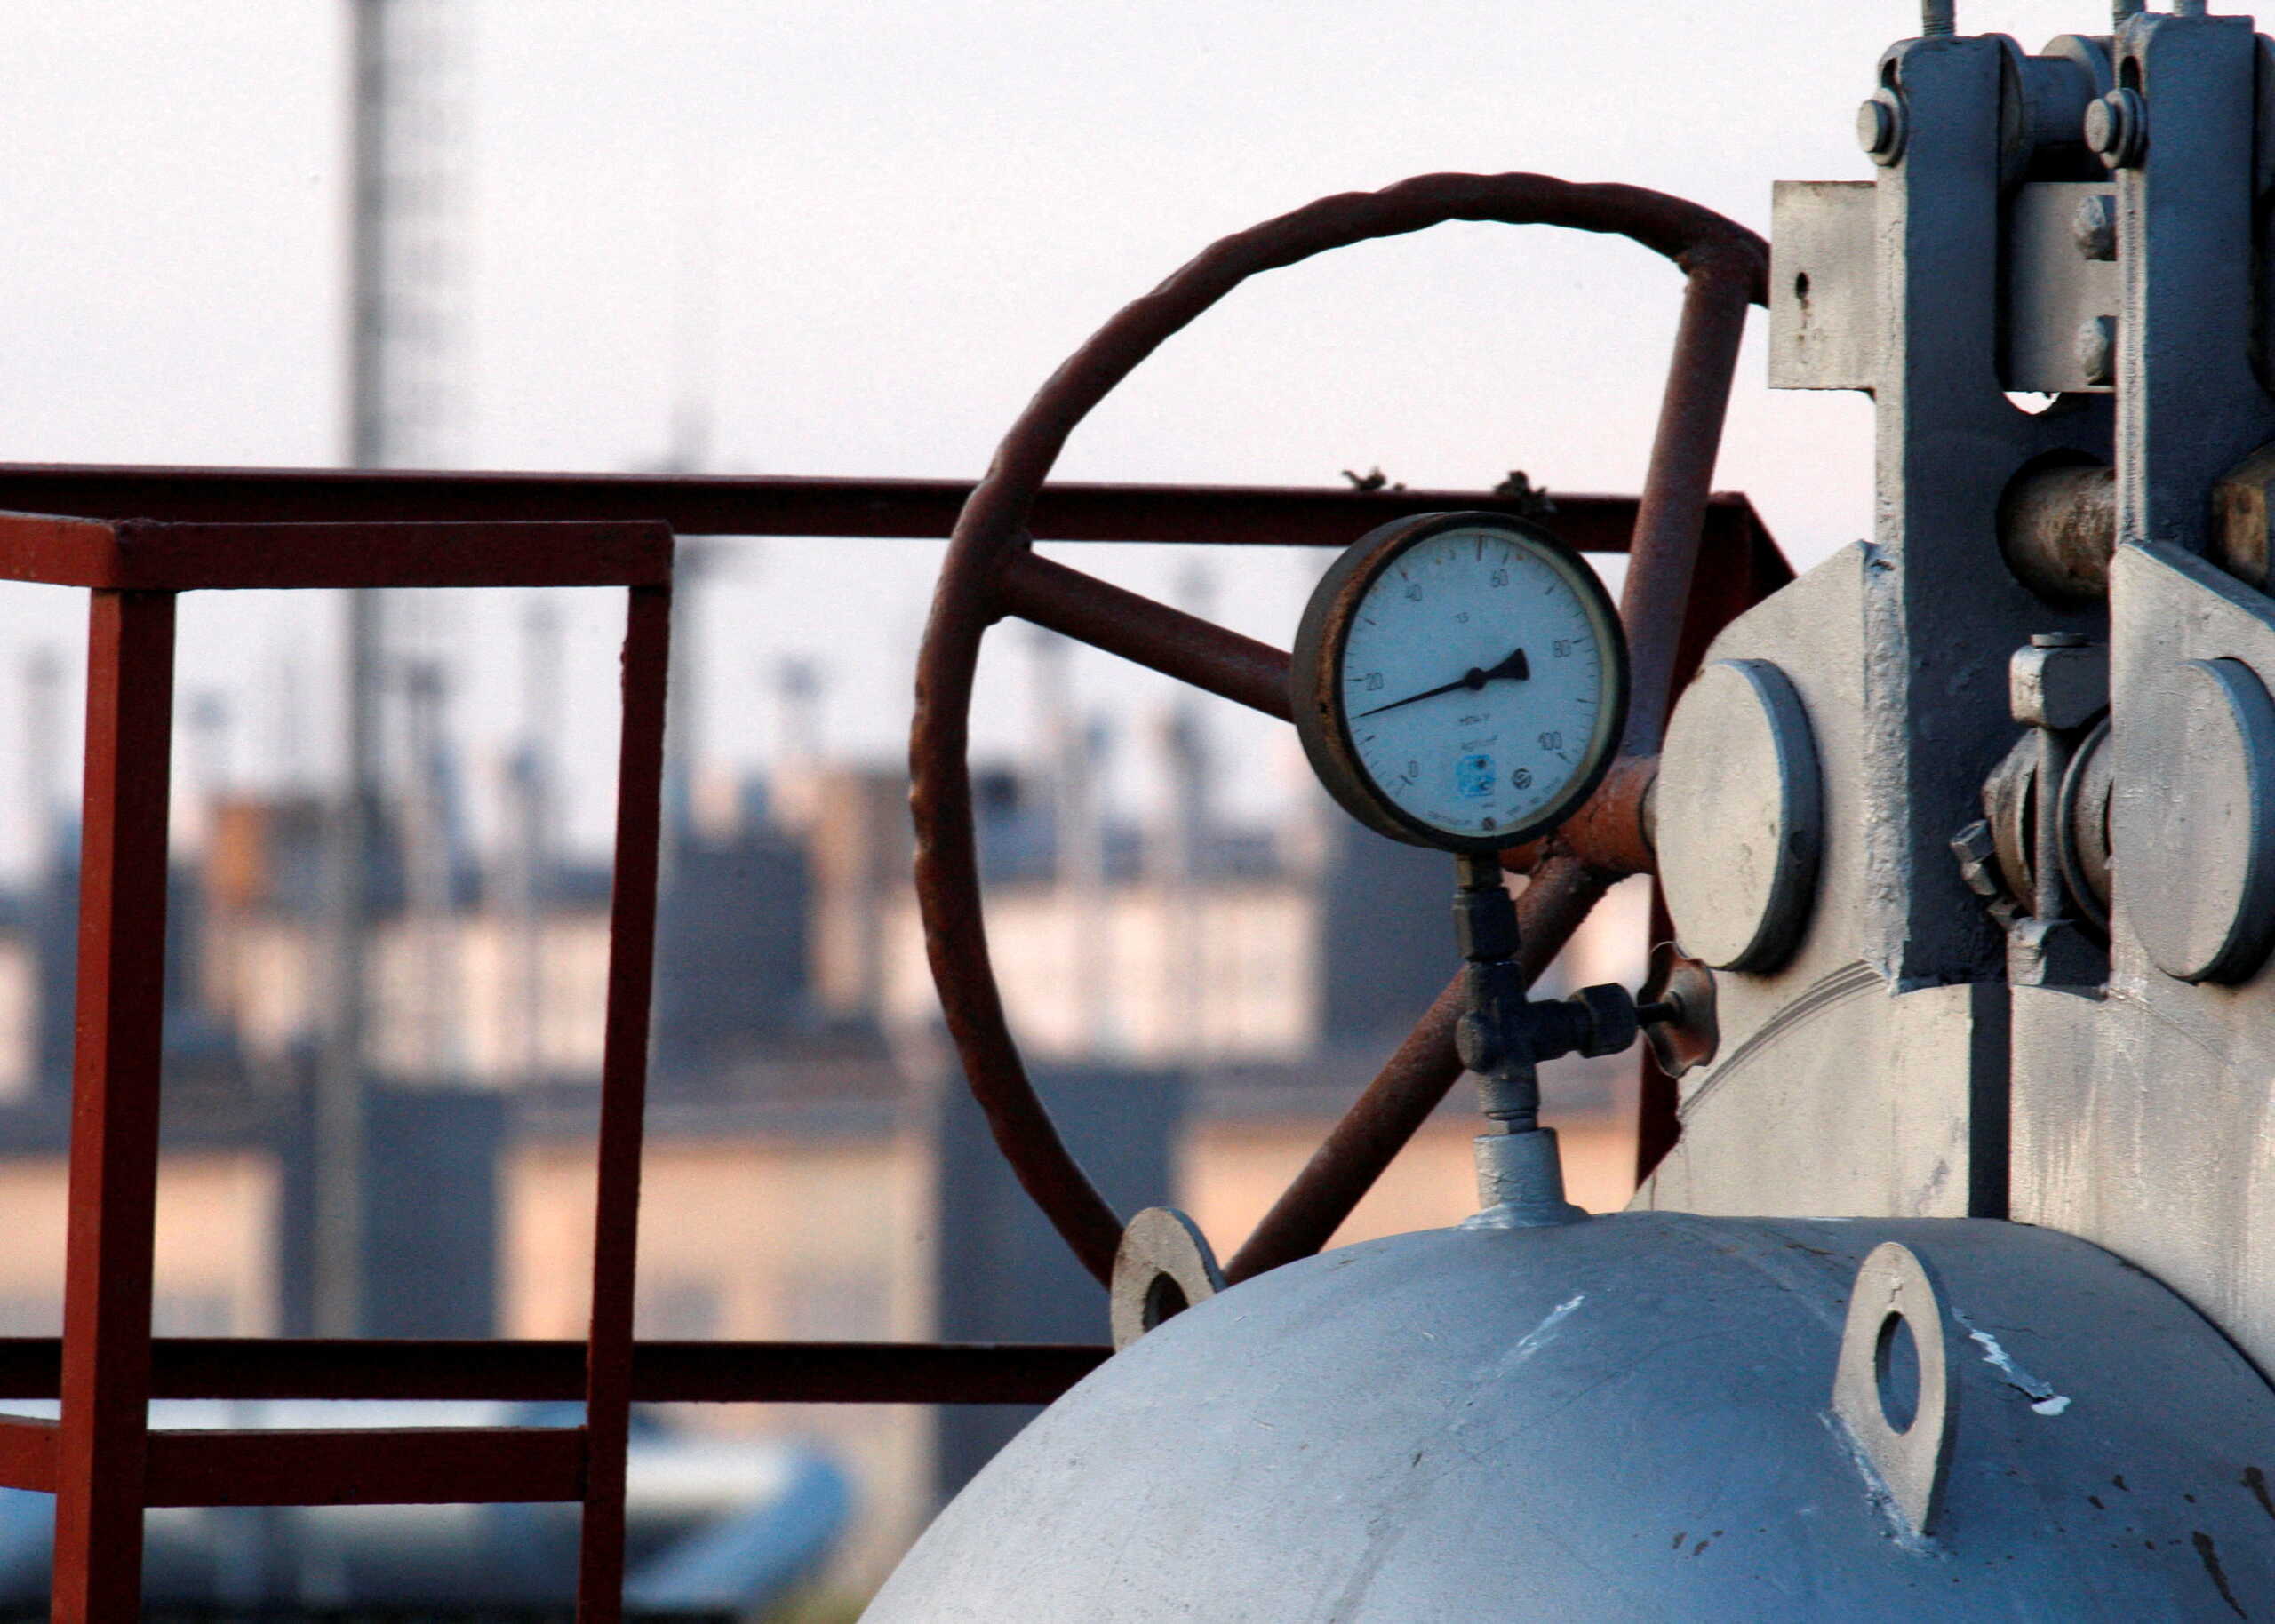 Ουκρανία για διακοπή φυσικού αερίου: Η Ρωσία είναι υπεύθυνη για τις ανθρωπιστικές συνέπειες